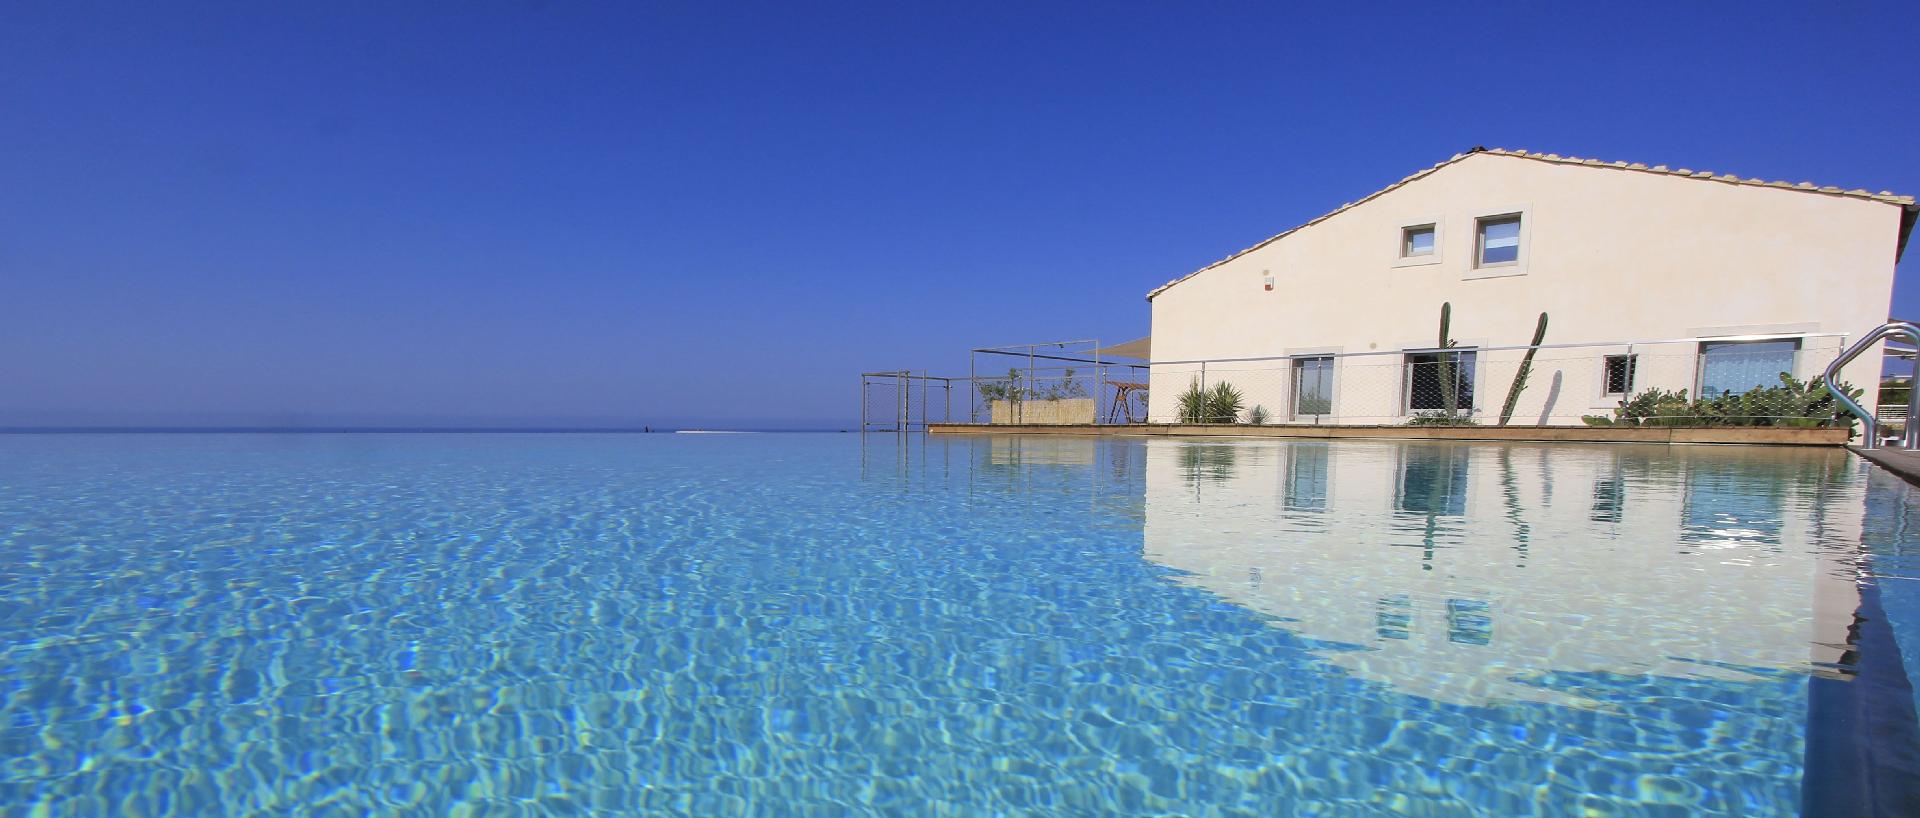 Kaos, Ferienhaus mit Aussicht in einem Resort mit   in Italien